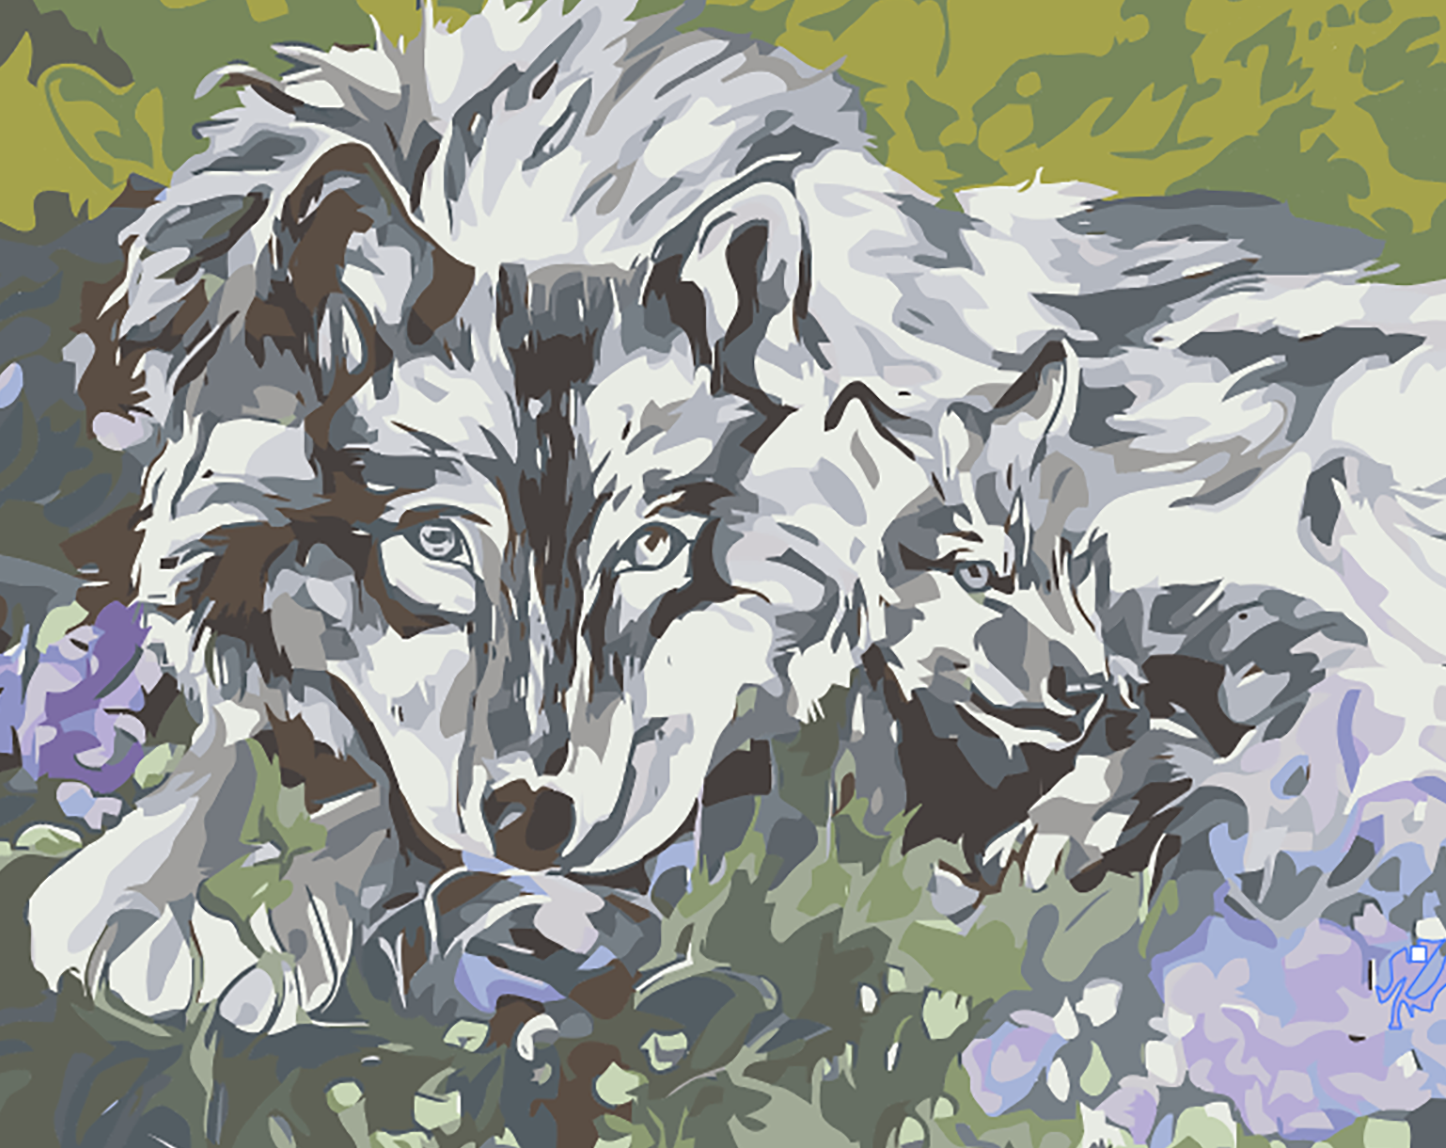 Картина по номерам Волк на траве 40х50 см Hobby Home